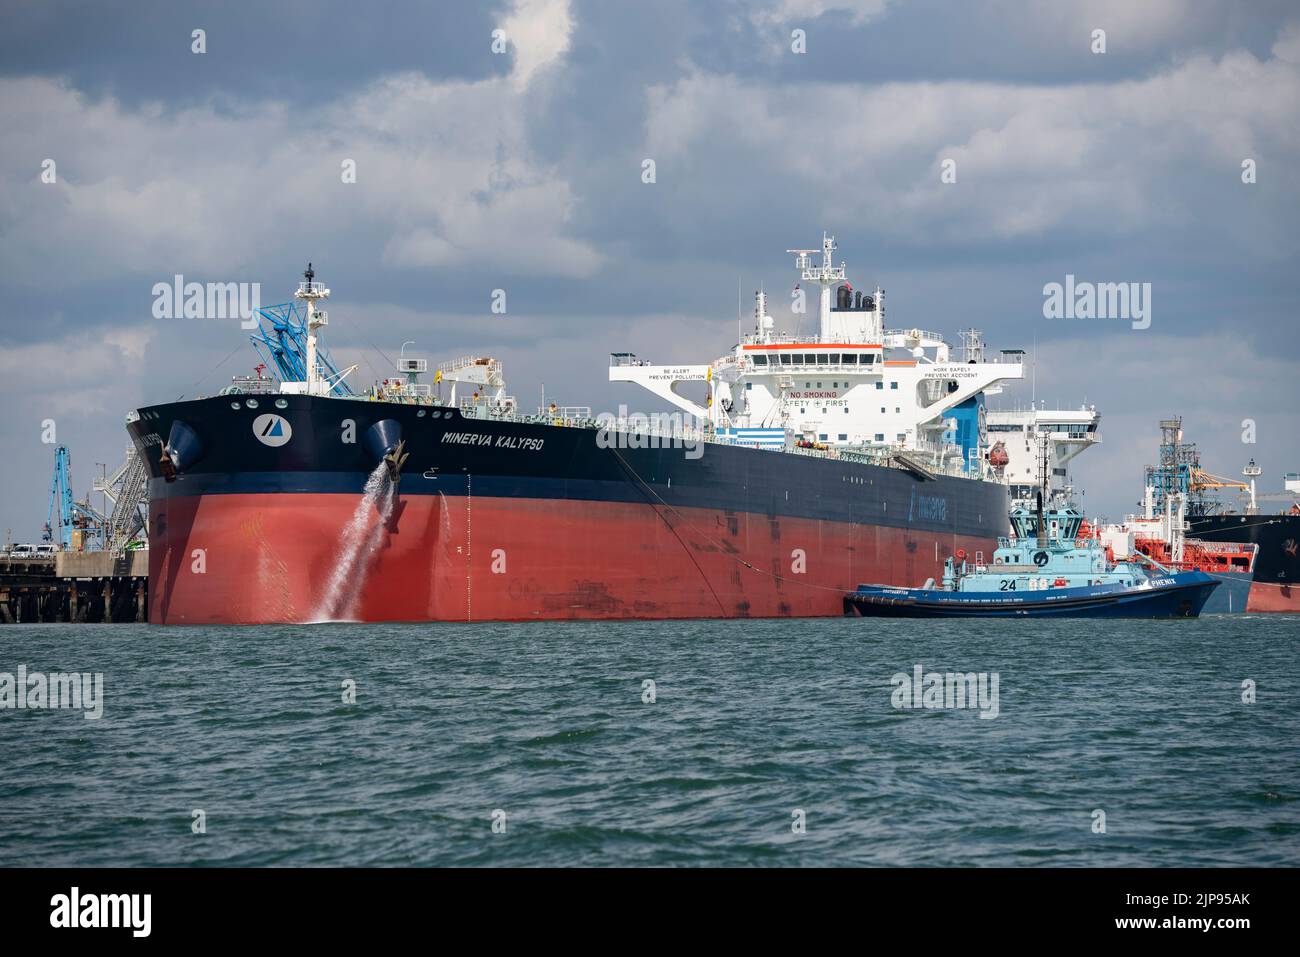 Der Rohöltanker Minerva Kalypso liegt in der Ölraffinerie Exxon Mobil Fawley in Southampton Water an der Südküste Englands Stockfoto